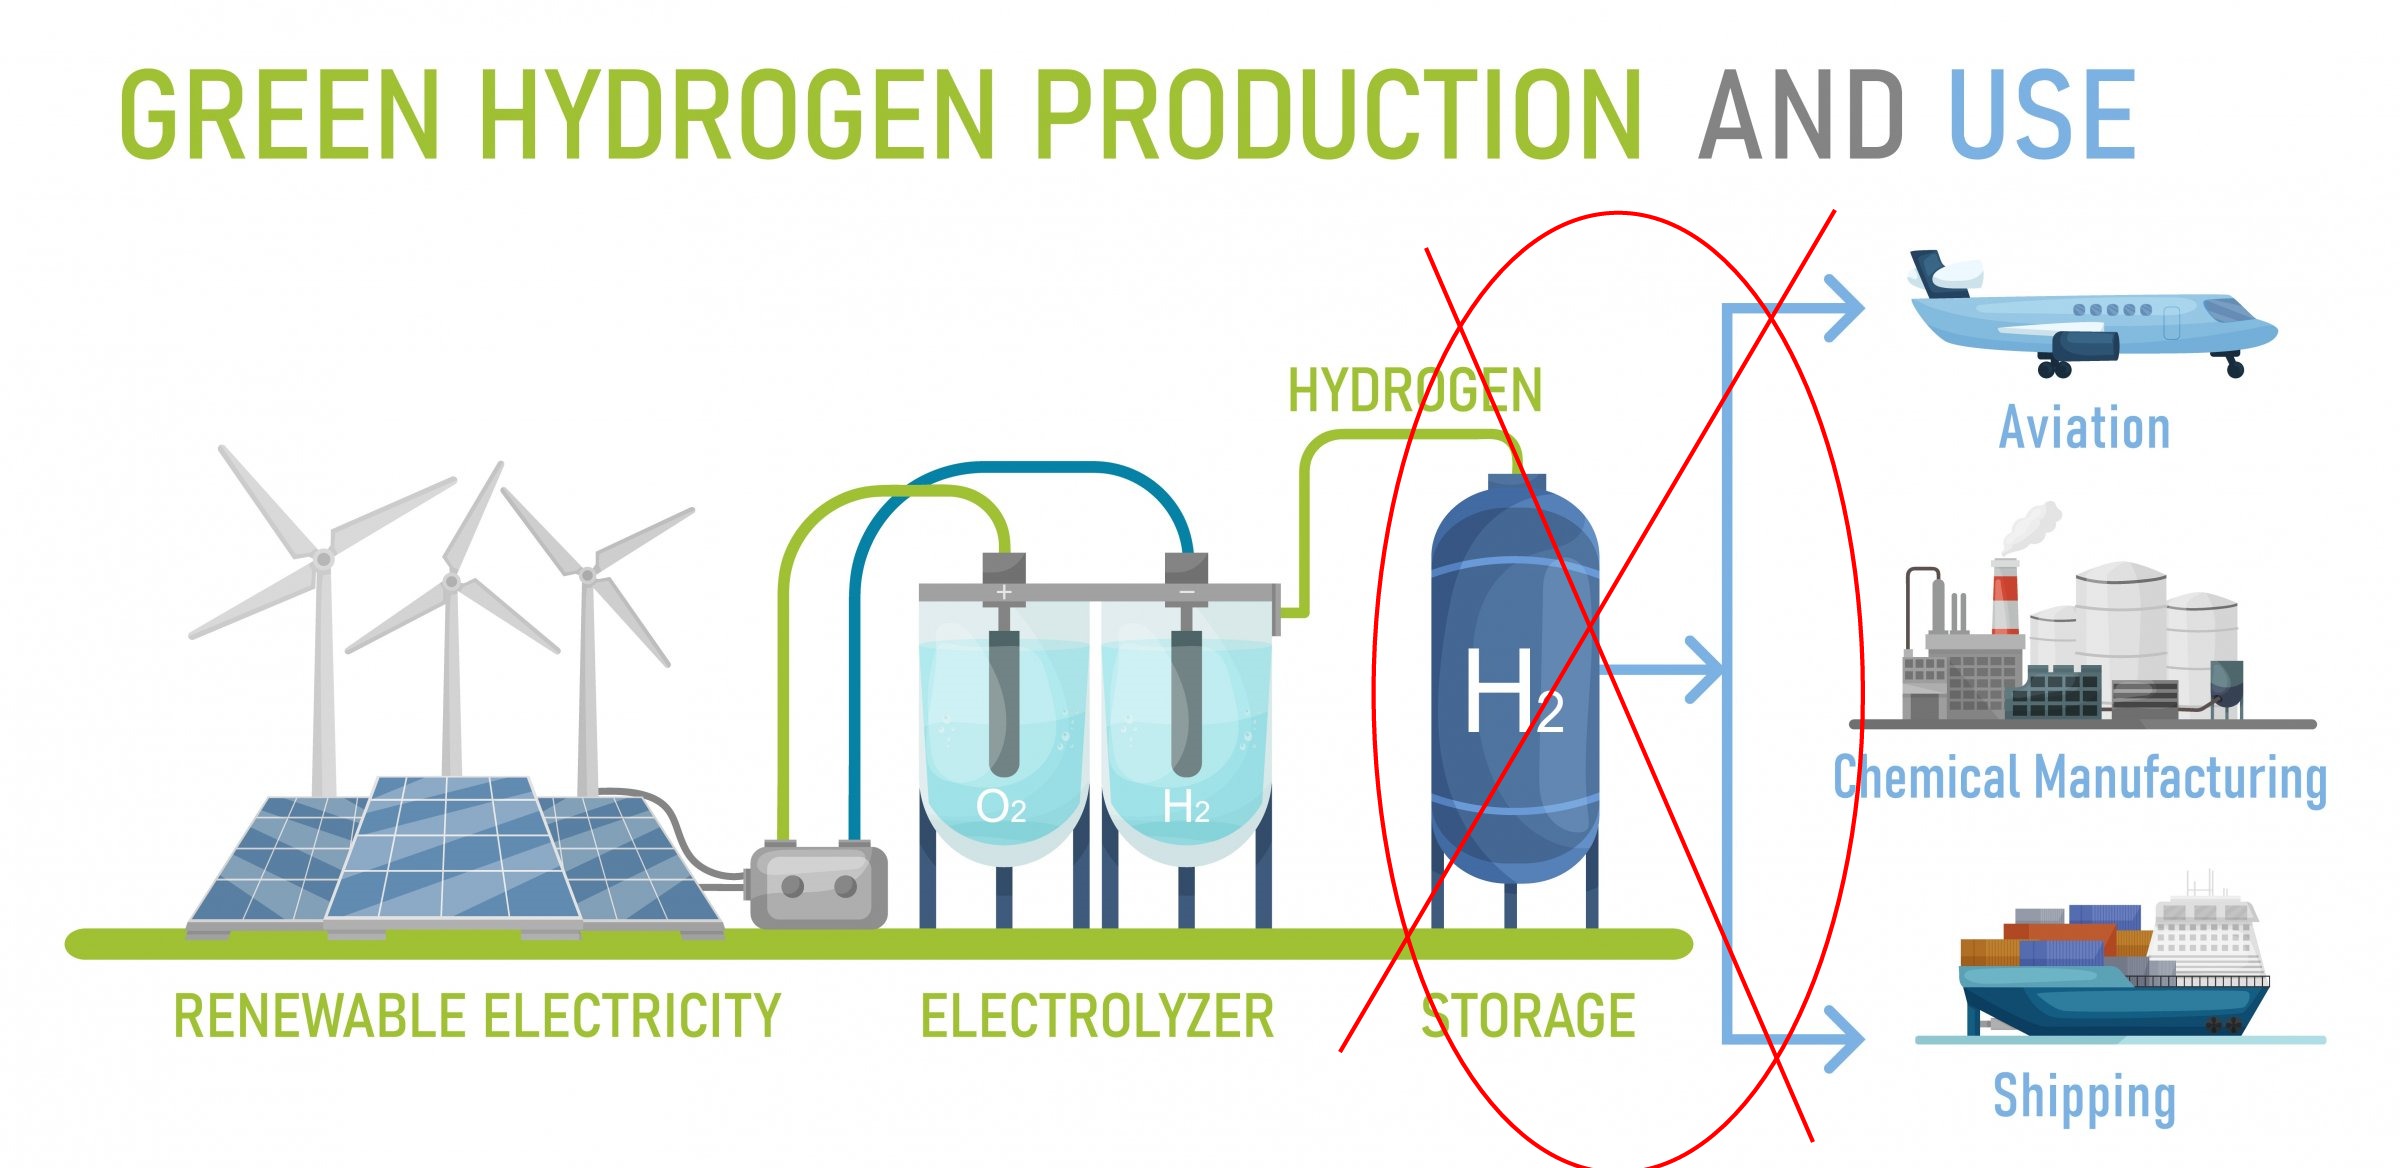 Hydrogen transport and storage